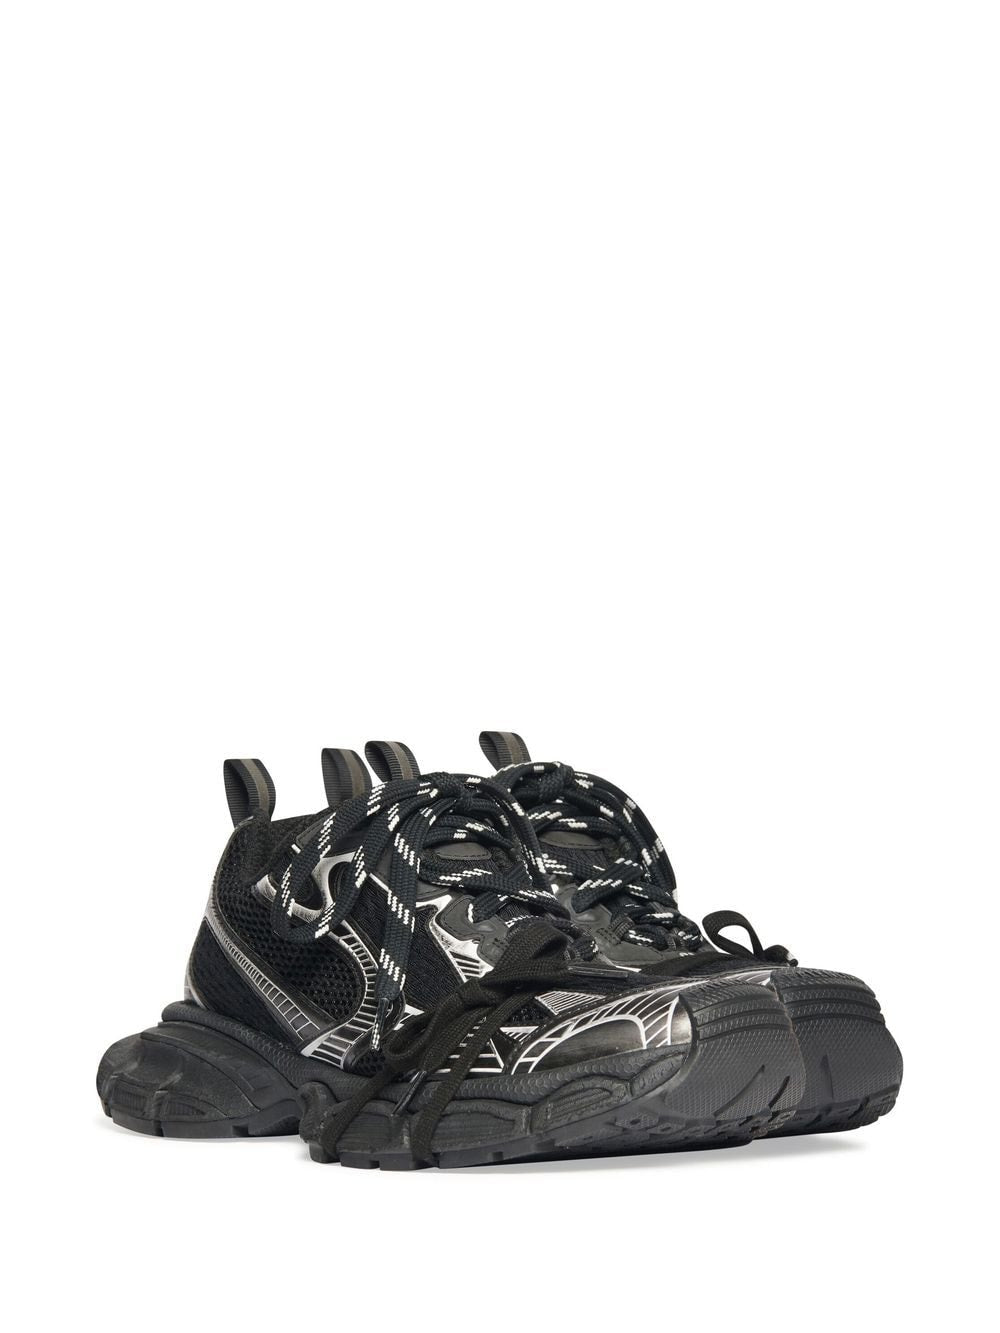 Balenciaga Sneakers Black